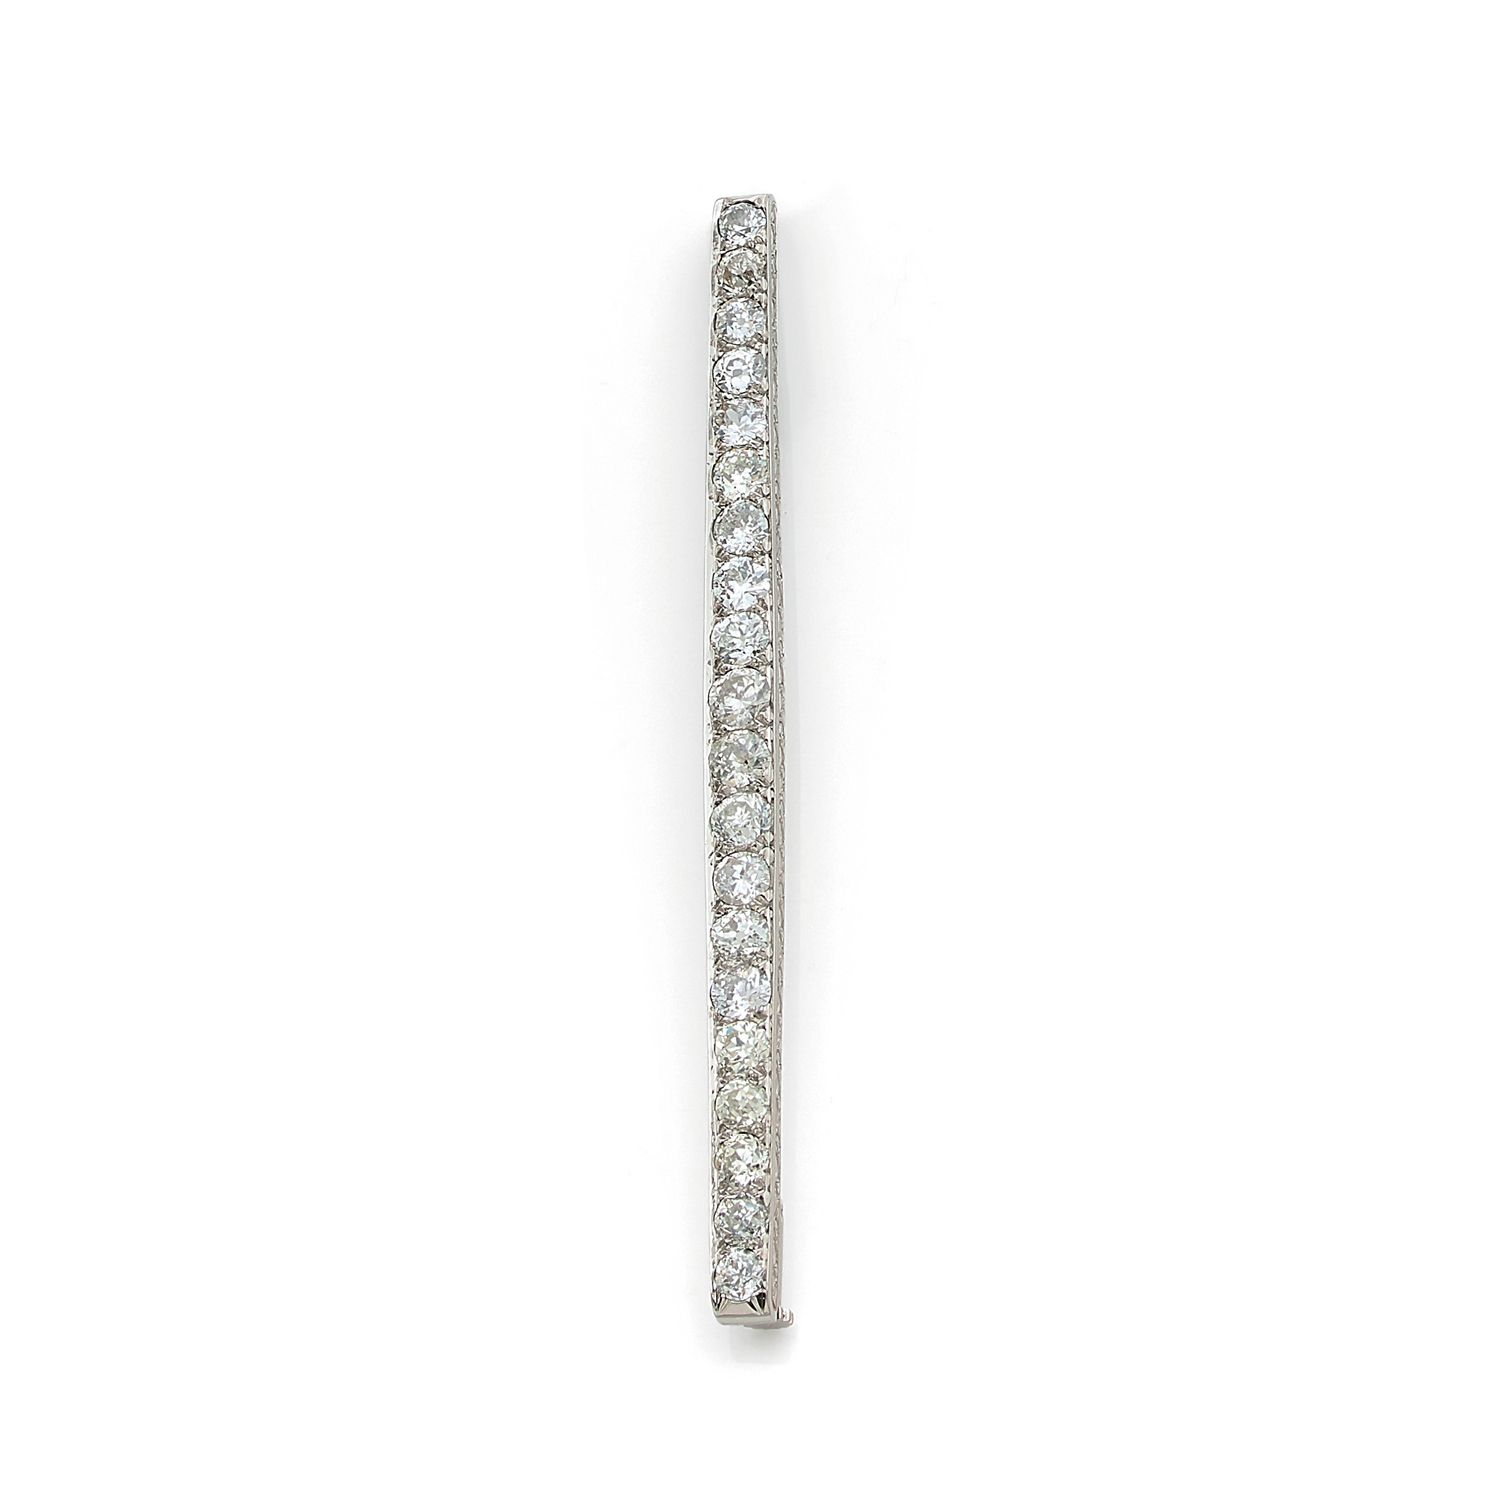 Null 铂金(850‰)雕刻胸针，镶有一排大小不一的老式切割钻石

长度：8.5厘米

毛重：9克